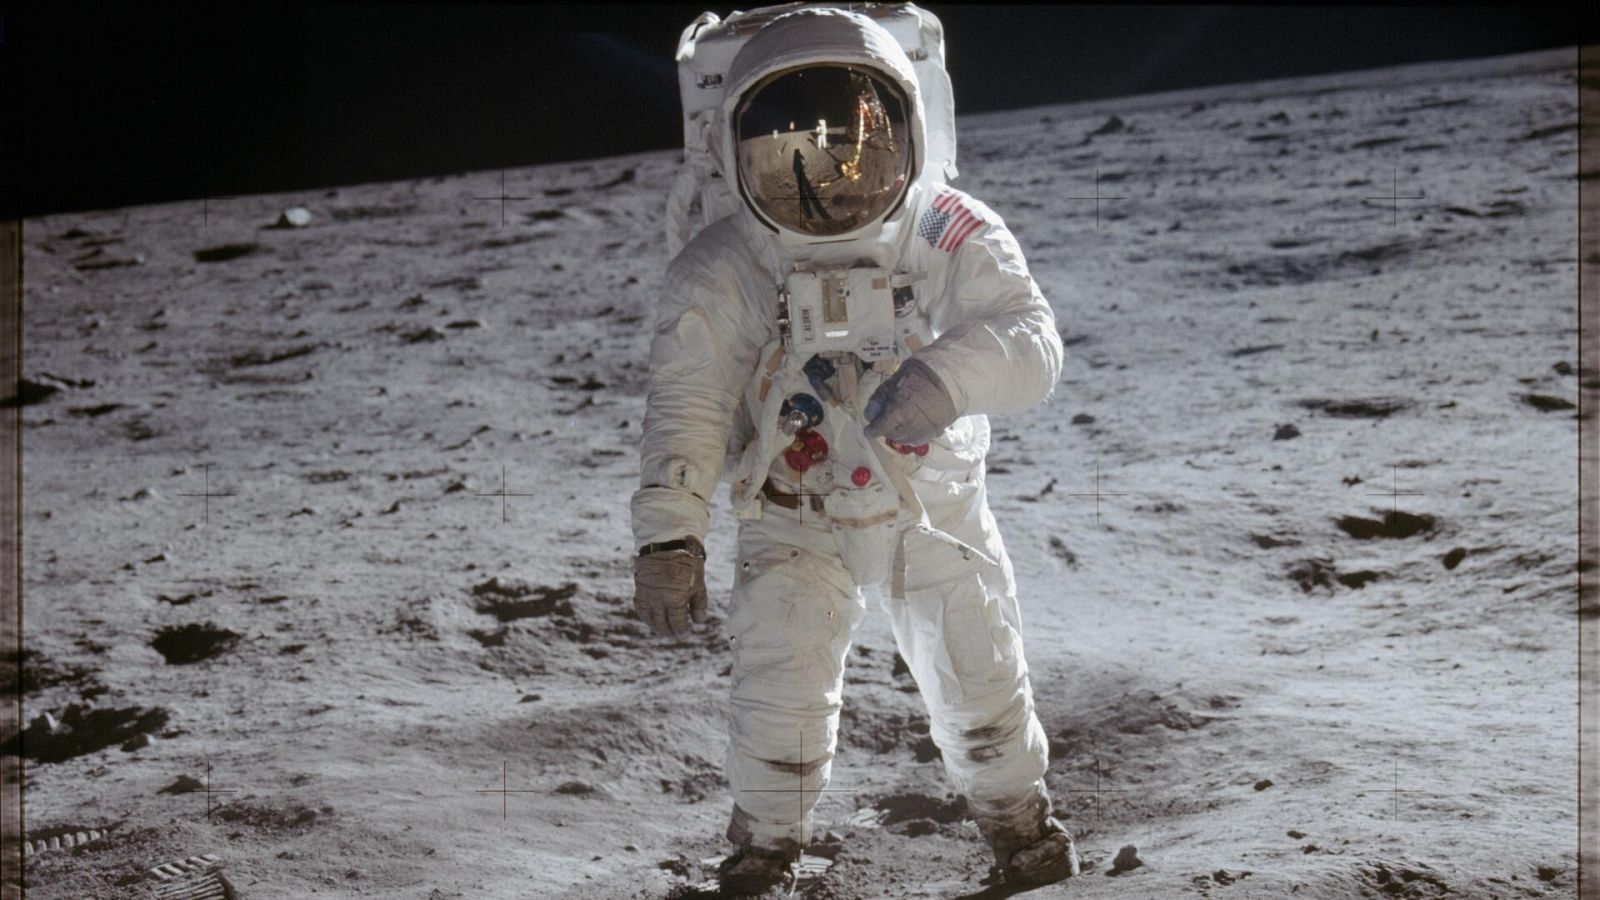 Las misiones del pograma Apollo de la NASA para llevar al hombre a la Luna están llenas de triunfos pero también de fracasos y decepciones